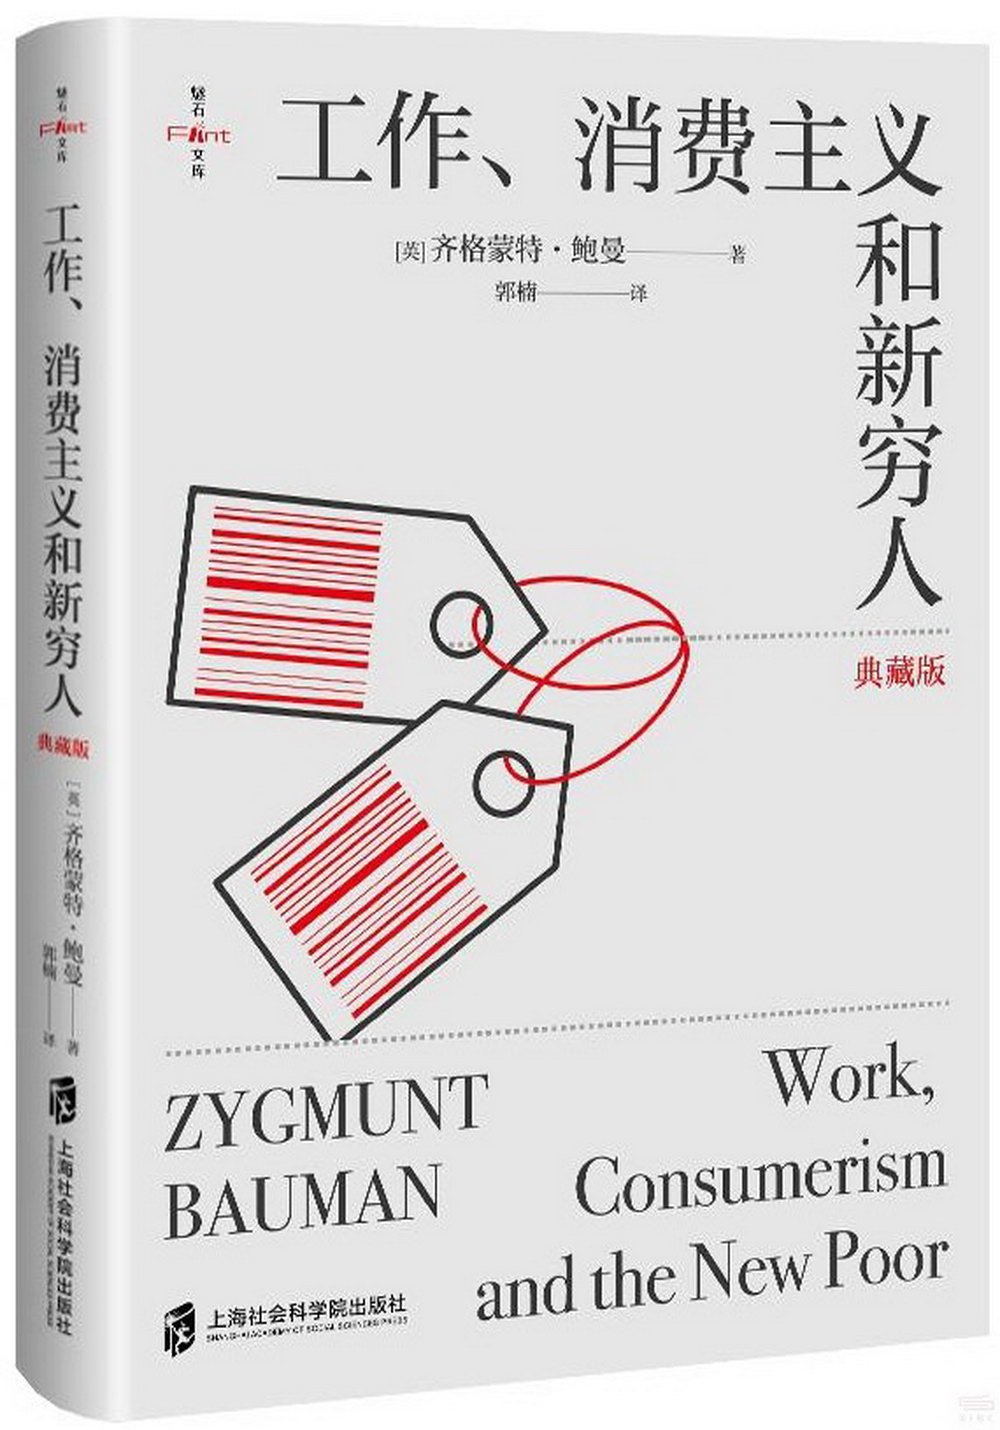 工作、消費主義和新窮人(典藏版)